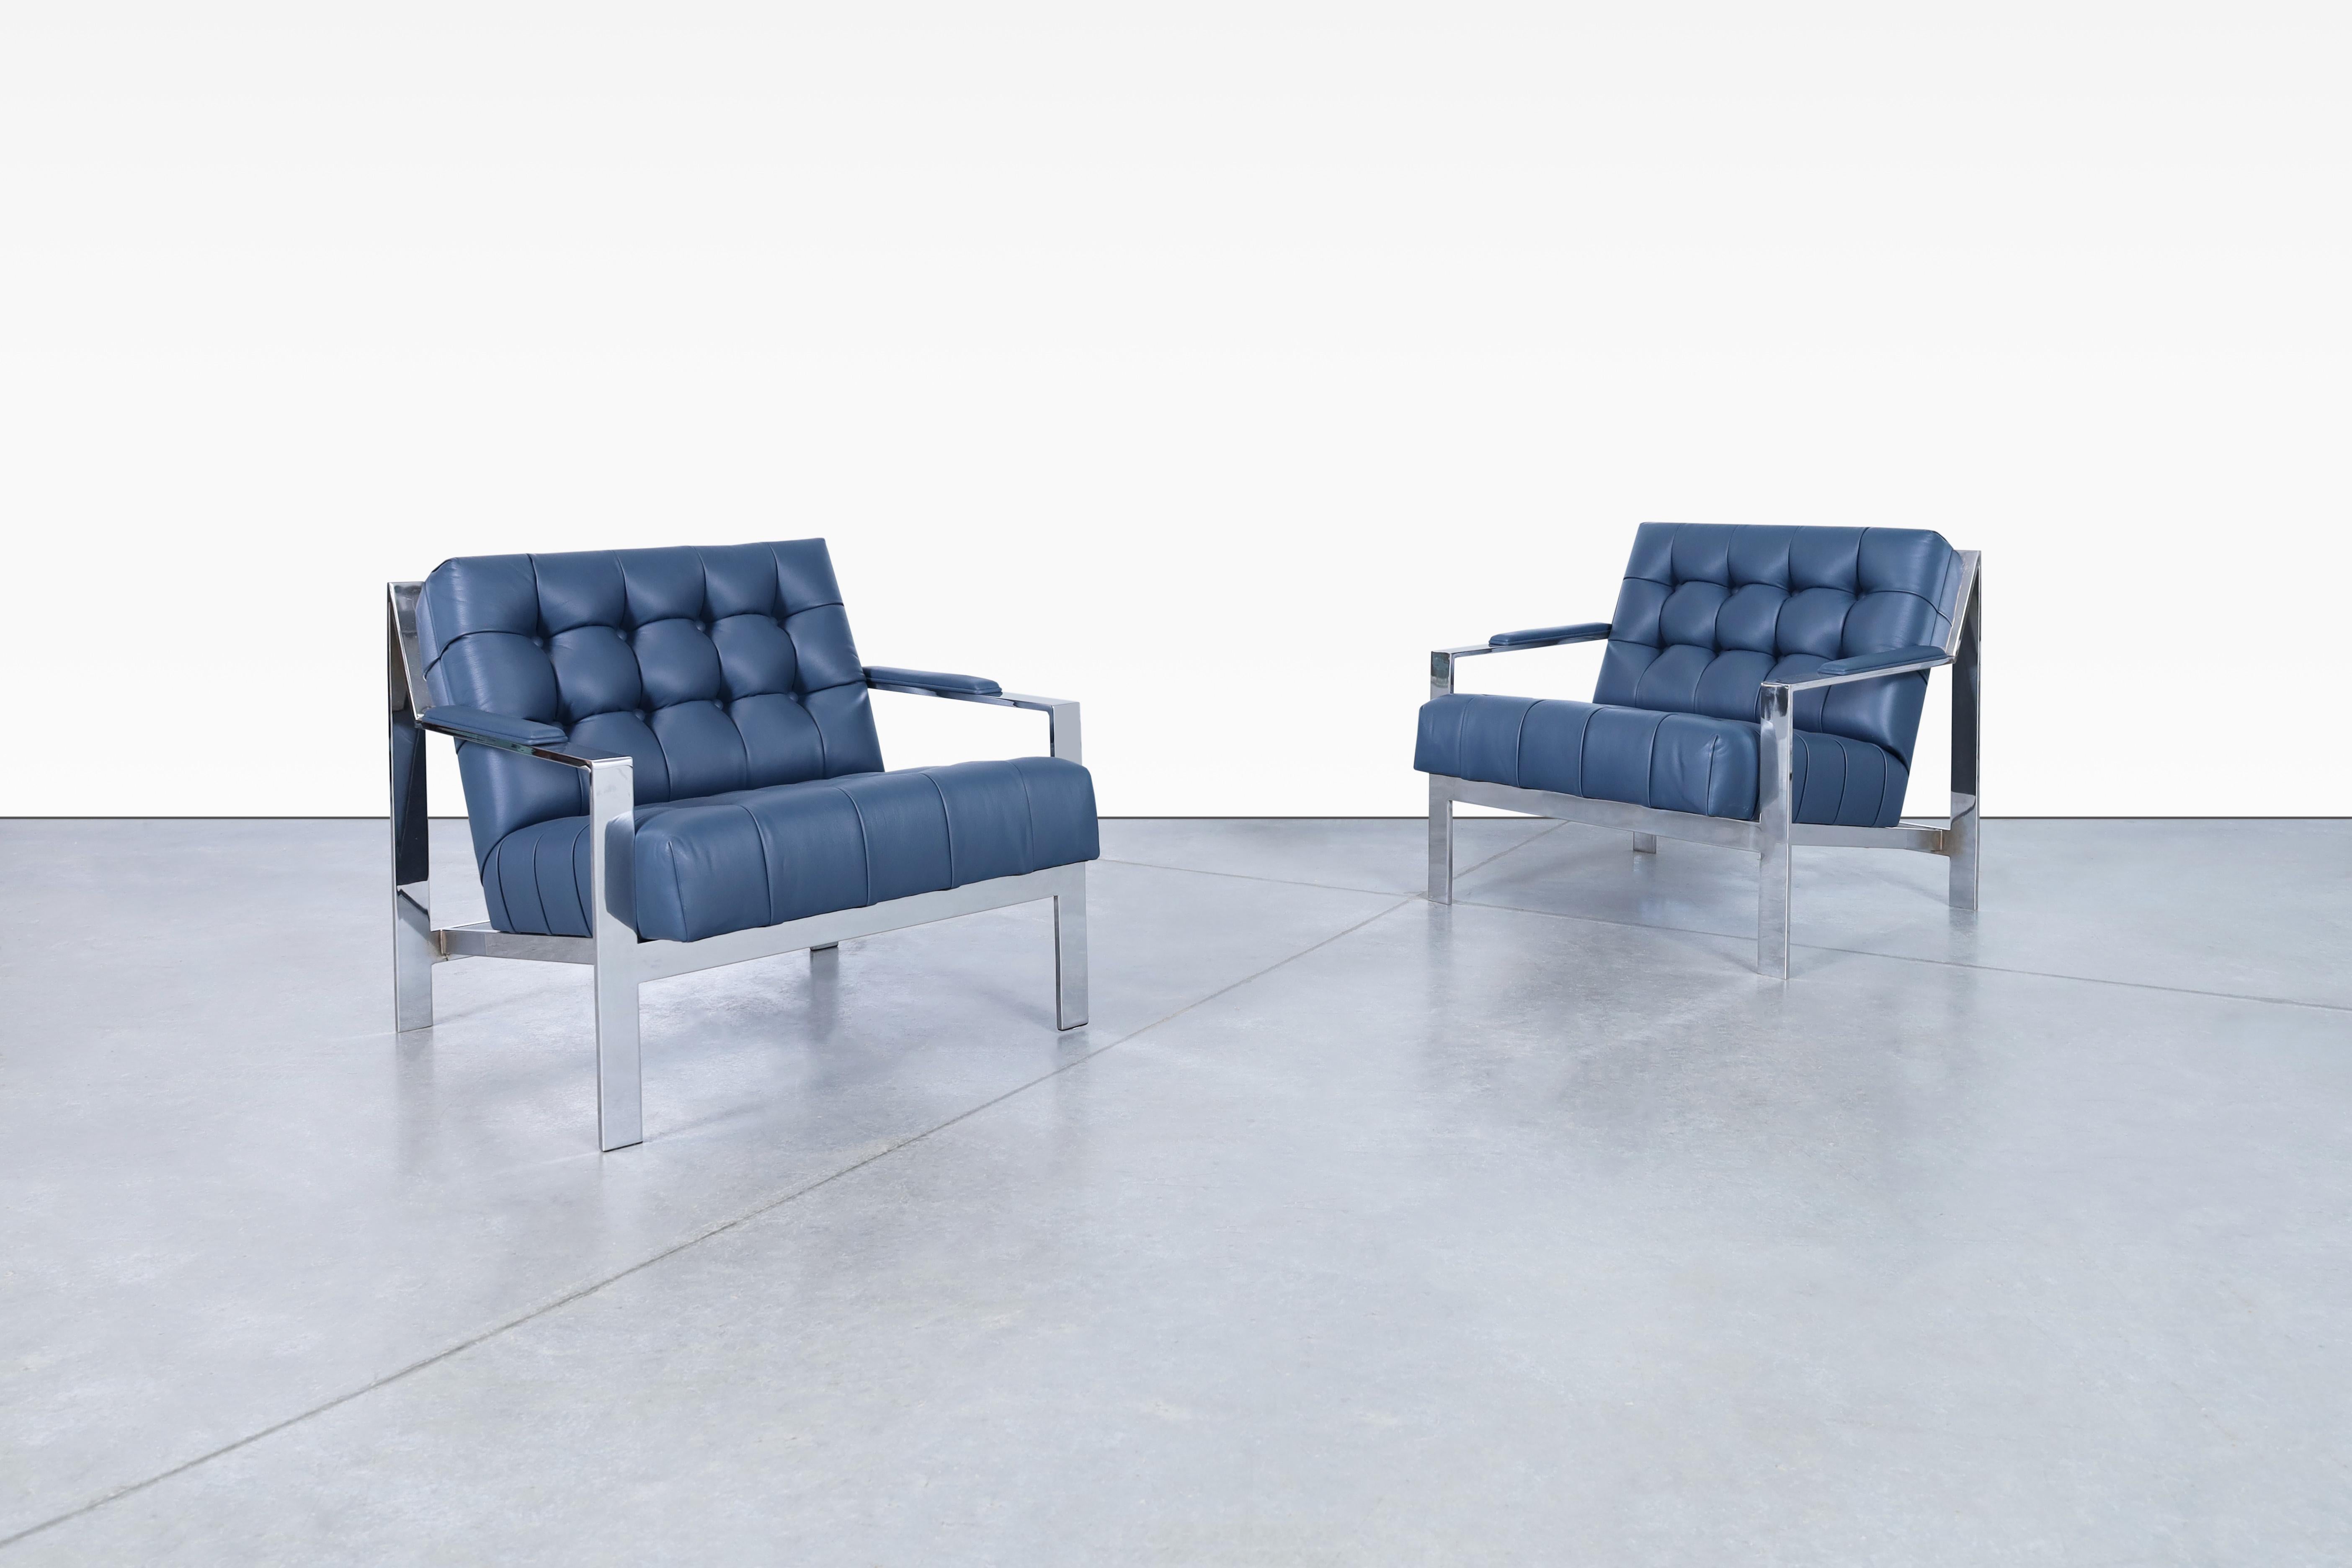 Magnifiques chaises de salon vintage en cuir et chrome tufté, conçues par Cy Mann et fabriquées aux États-Unis, vers les années 1970. Ces chaises sont dotées d'une structure entièrement chromée qui attire le regard par son architecture élégante et